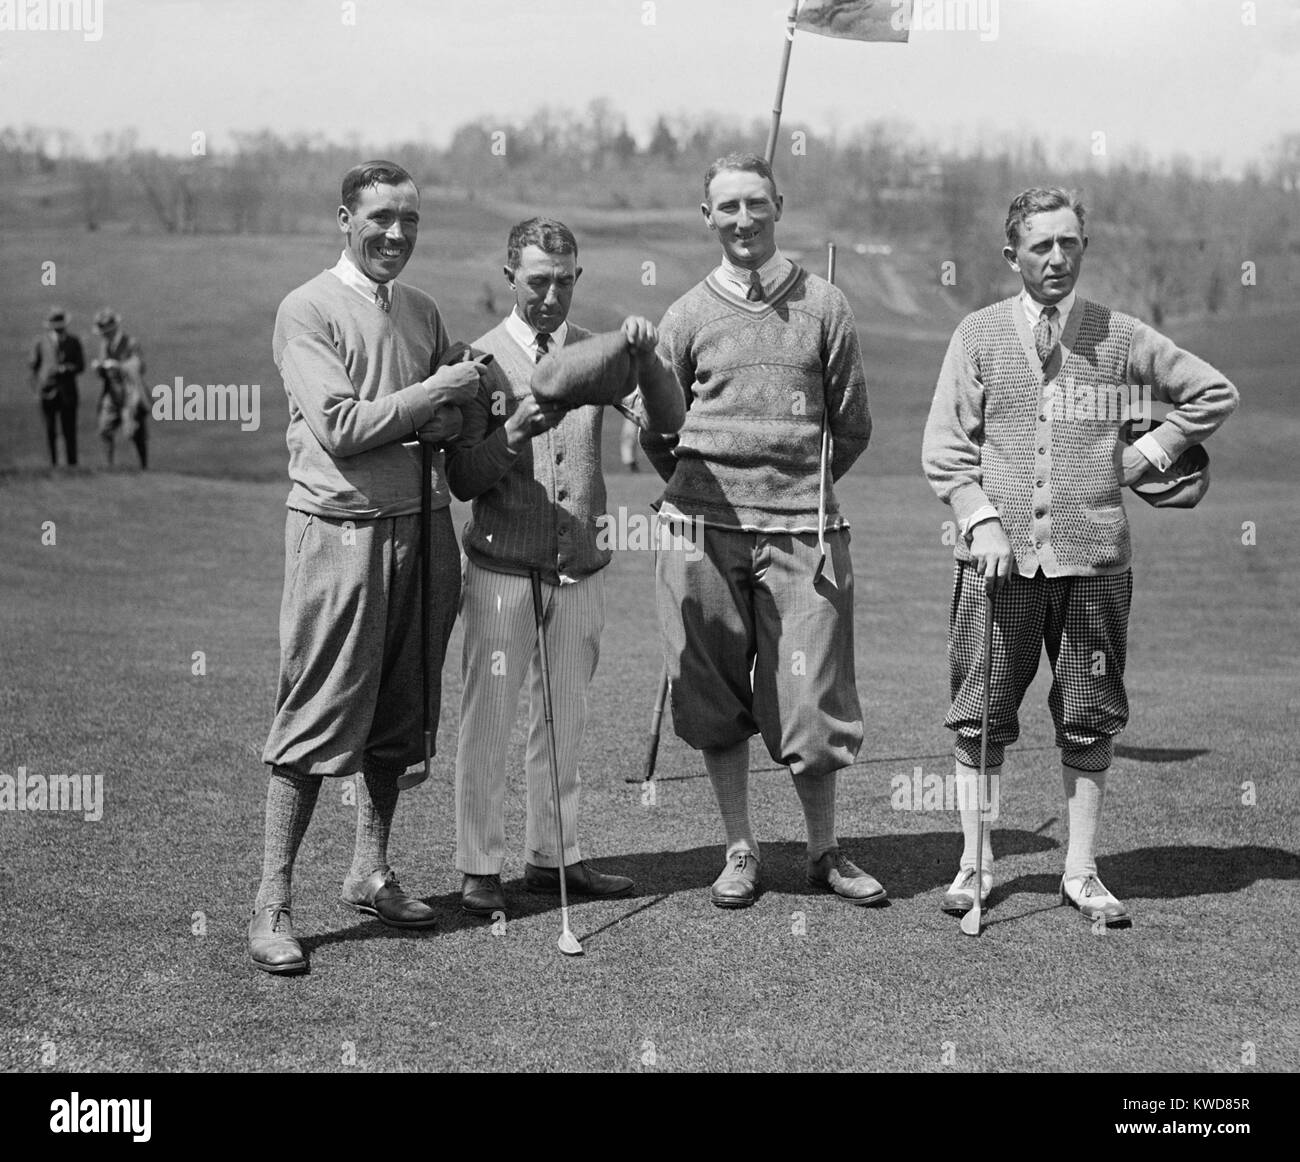 Golfspieler J.W. Ockenden, Fred McLeod, Arthur S. Havers, Jock Hutchison, 22. April 1924. McLeod und Hutchison wurden professionelle Spieler und später eingesetzt in die PGA Hall des Ruhmes. Washington, D.C. Nähe (BSLOC 2015 17 110) Stockfoto